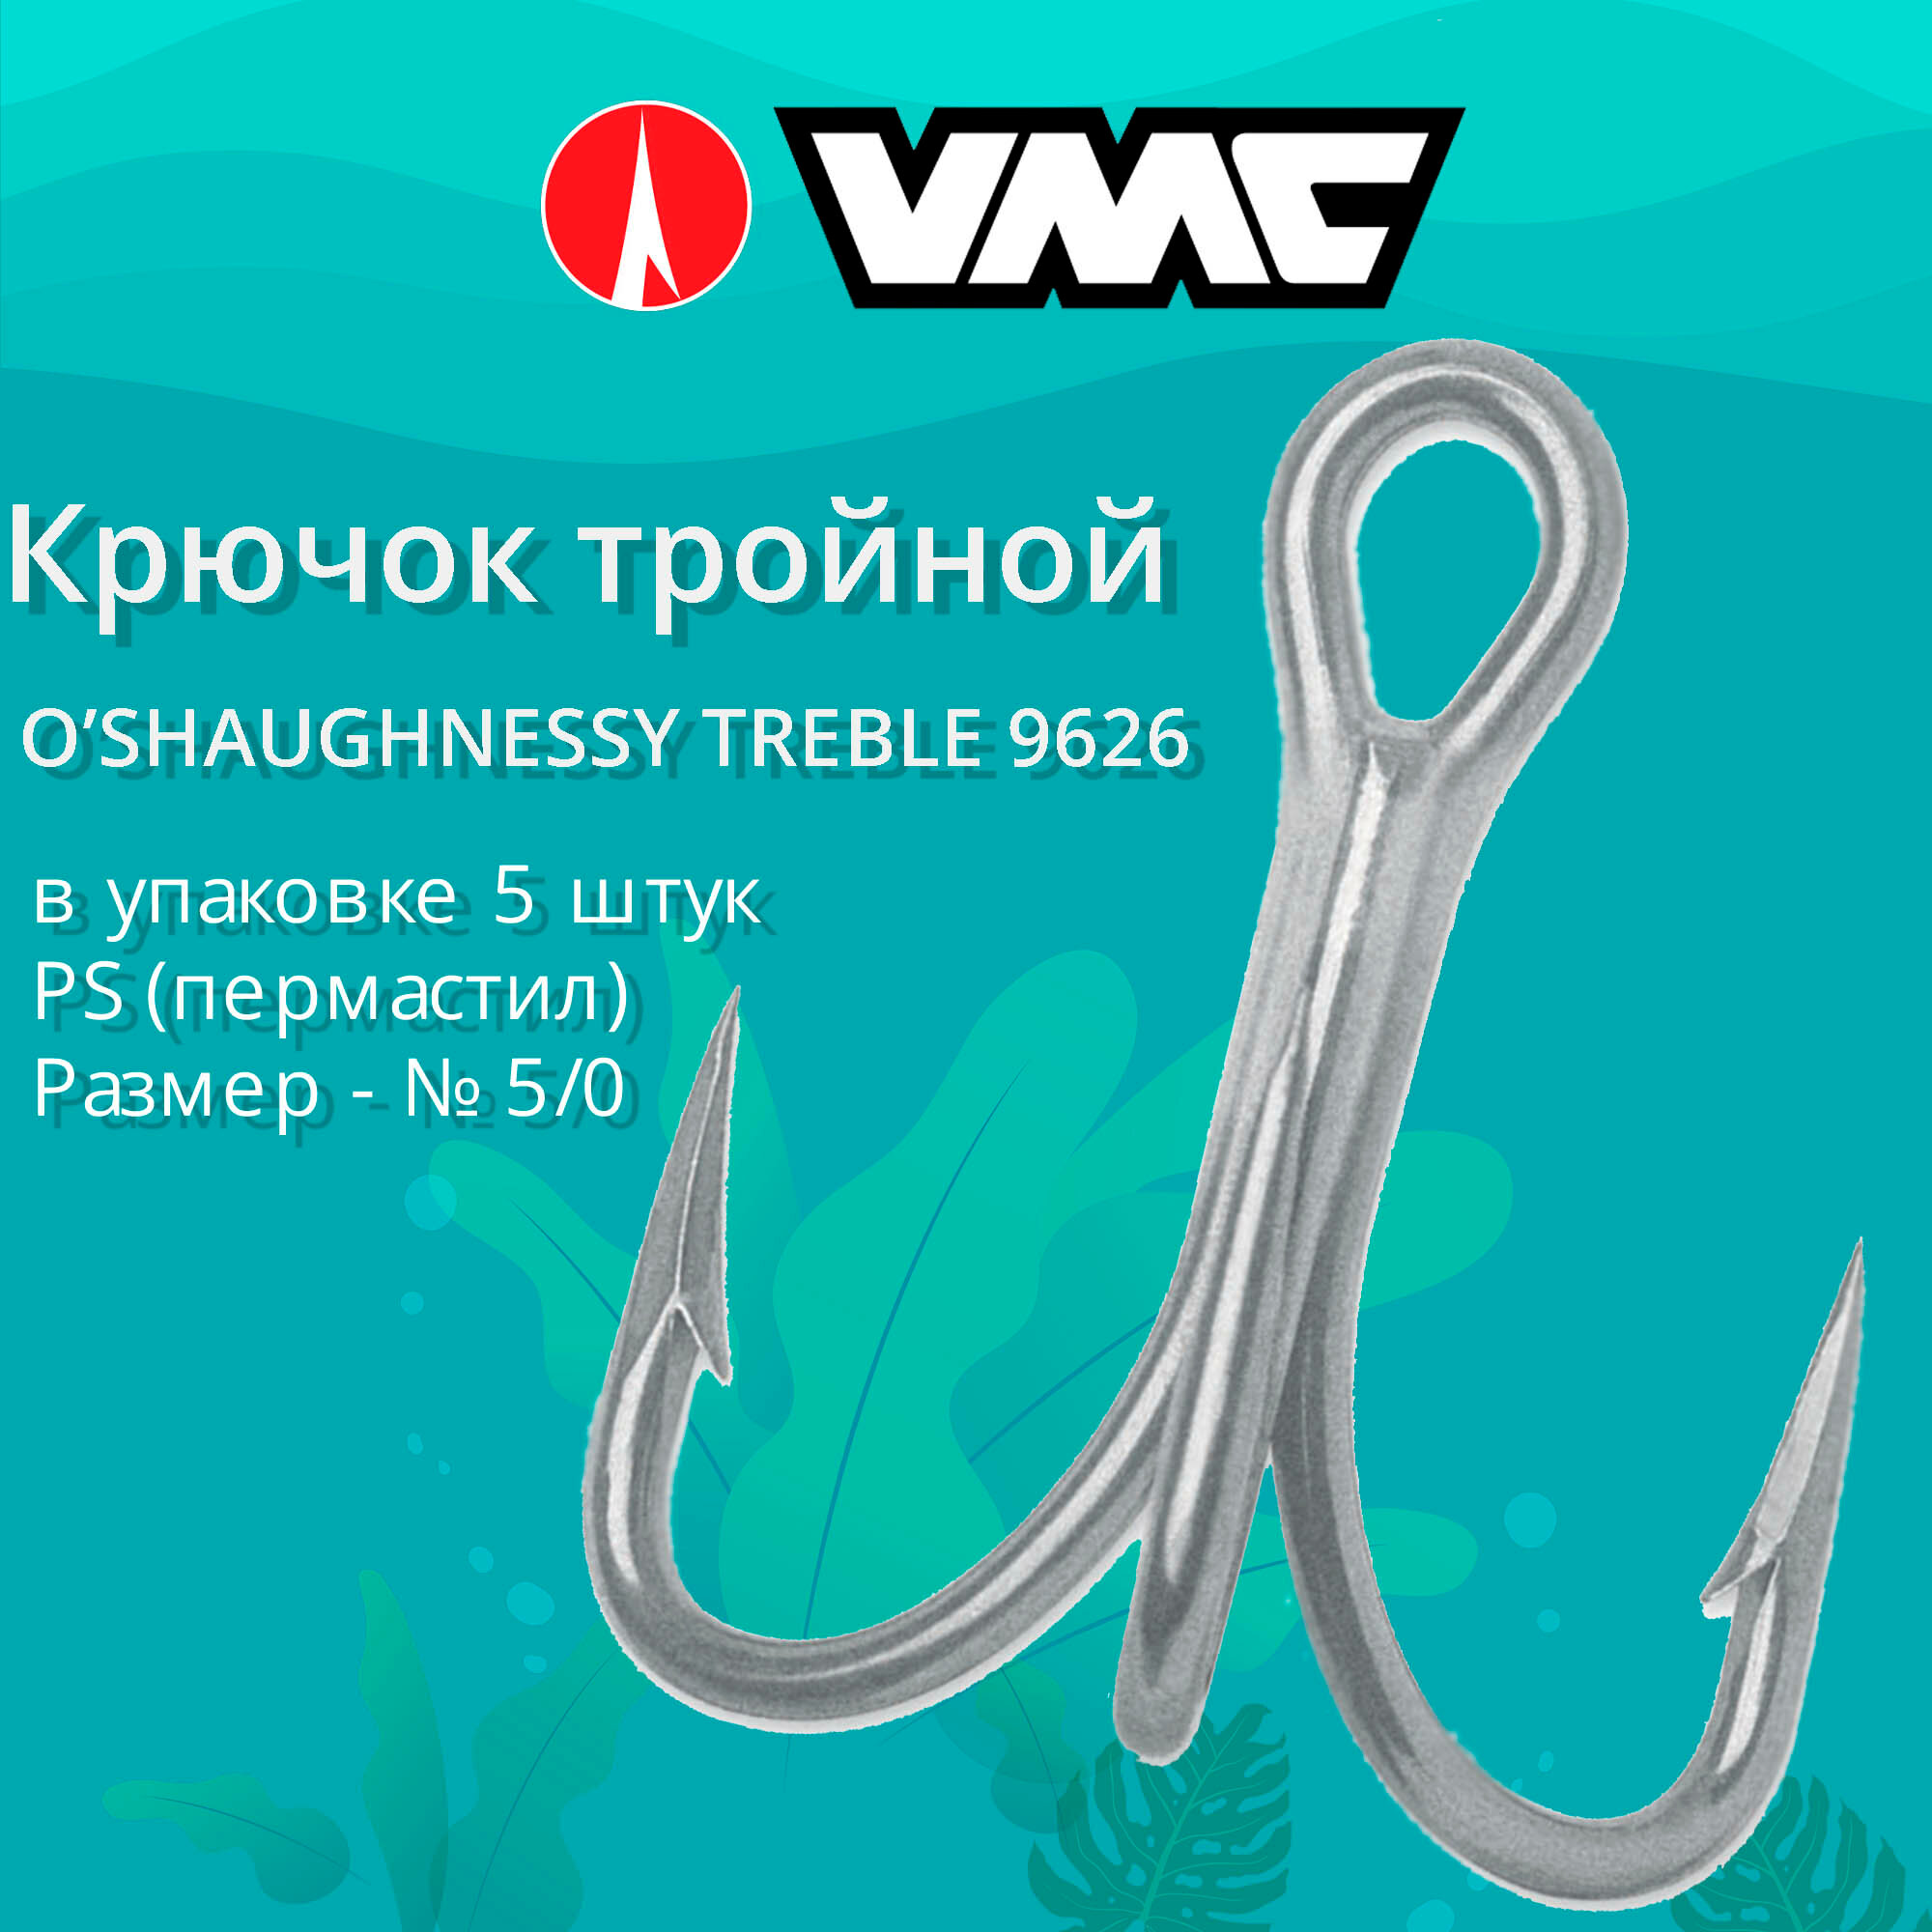 Крючок рыболовный VMC тройной 9626 PS (пермастил) №5/0 (5шт)